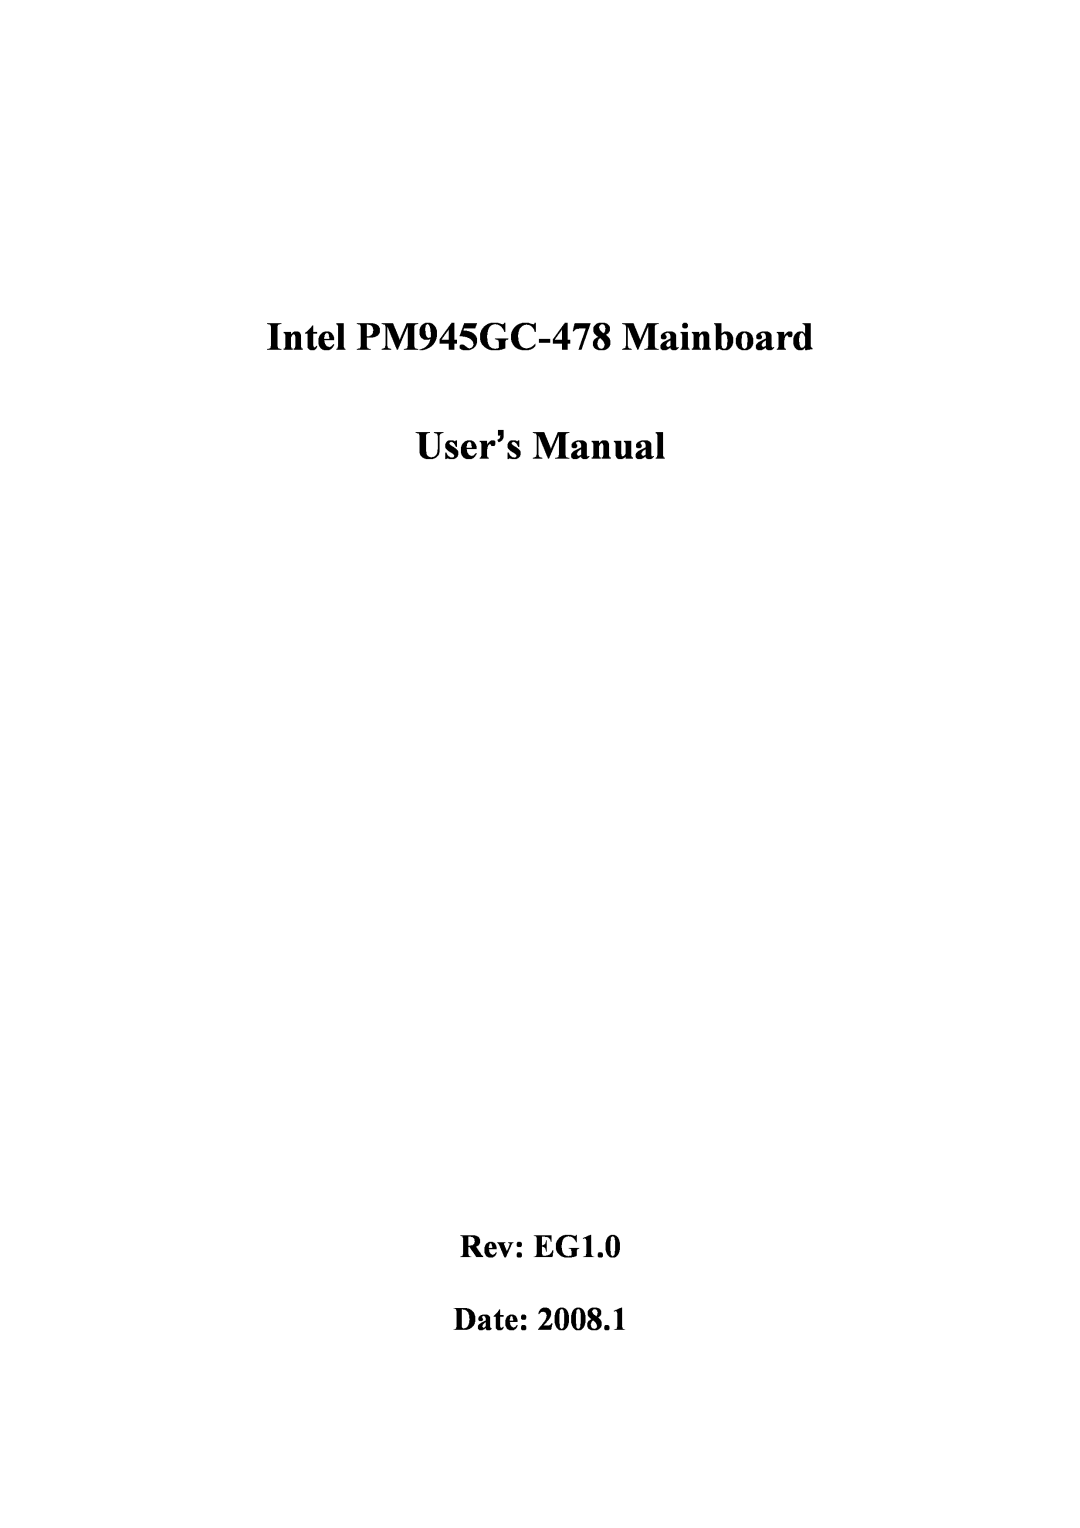 Intel user manual Rev EG1.0 Date, Intel PM945GC-478Mainboard, User’s Manual 